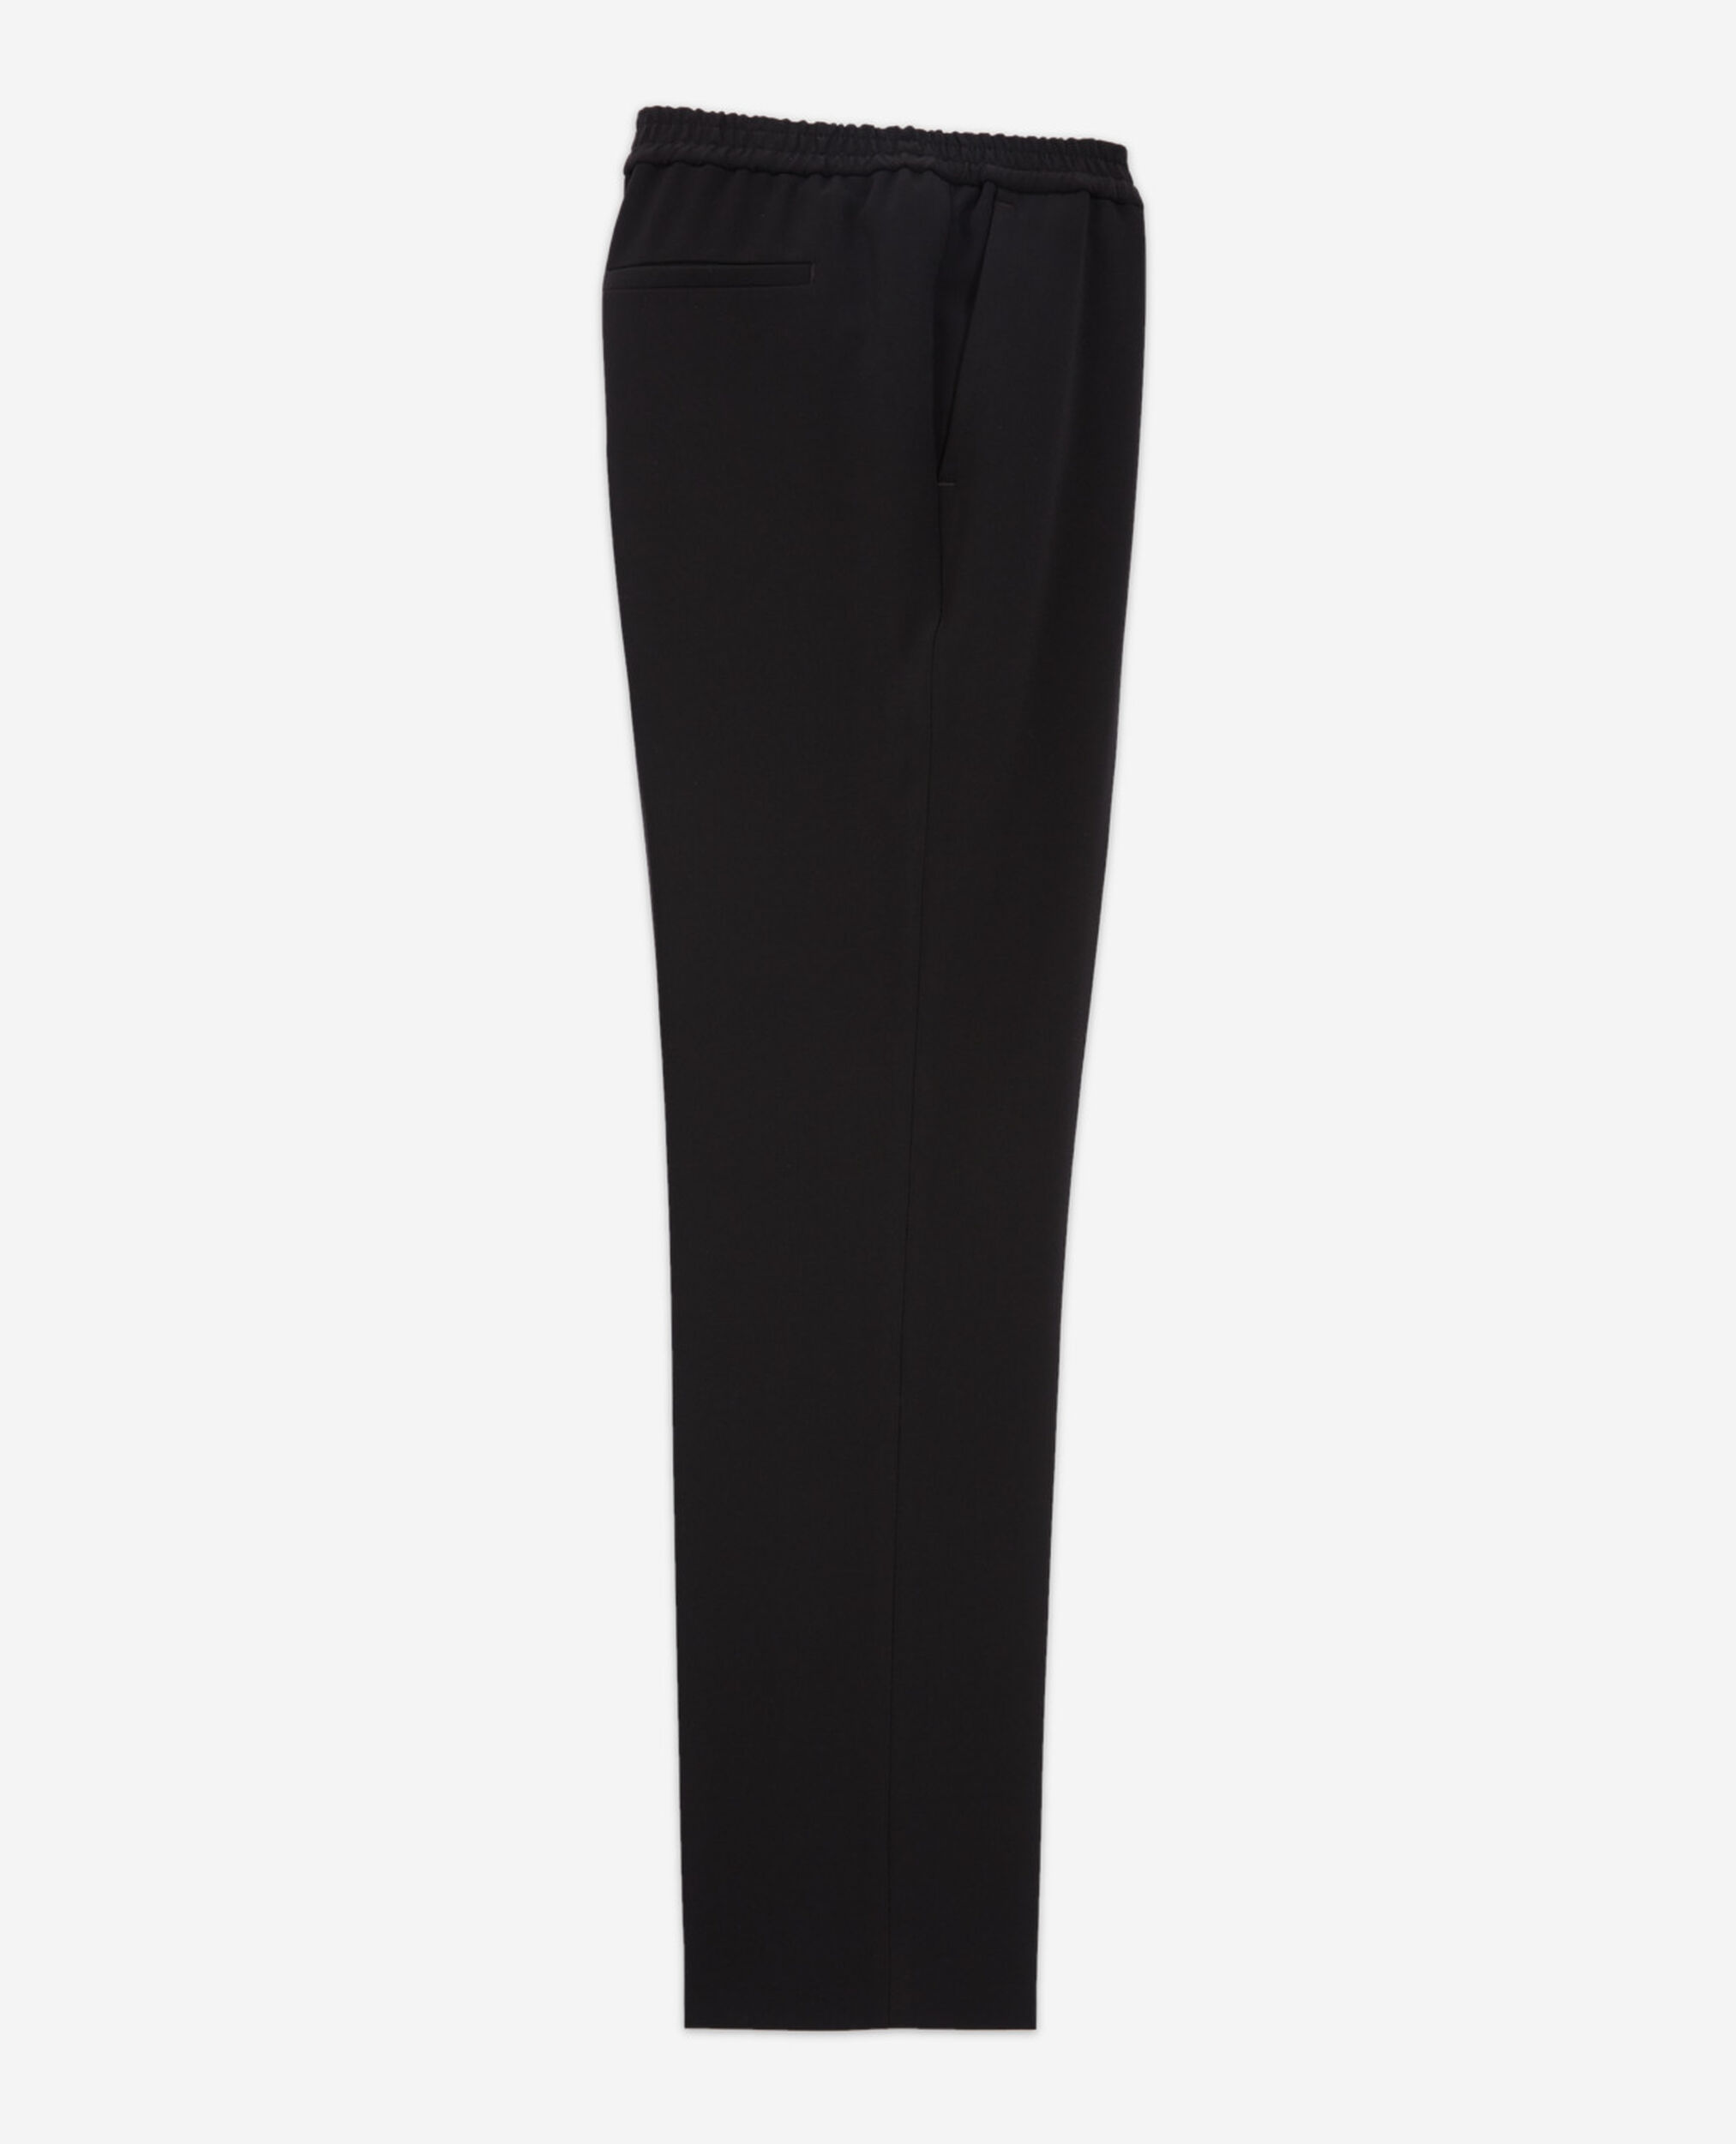 Pantalon noir tissu fluide taille élastique, BLACK, hi-res image number null